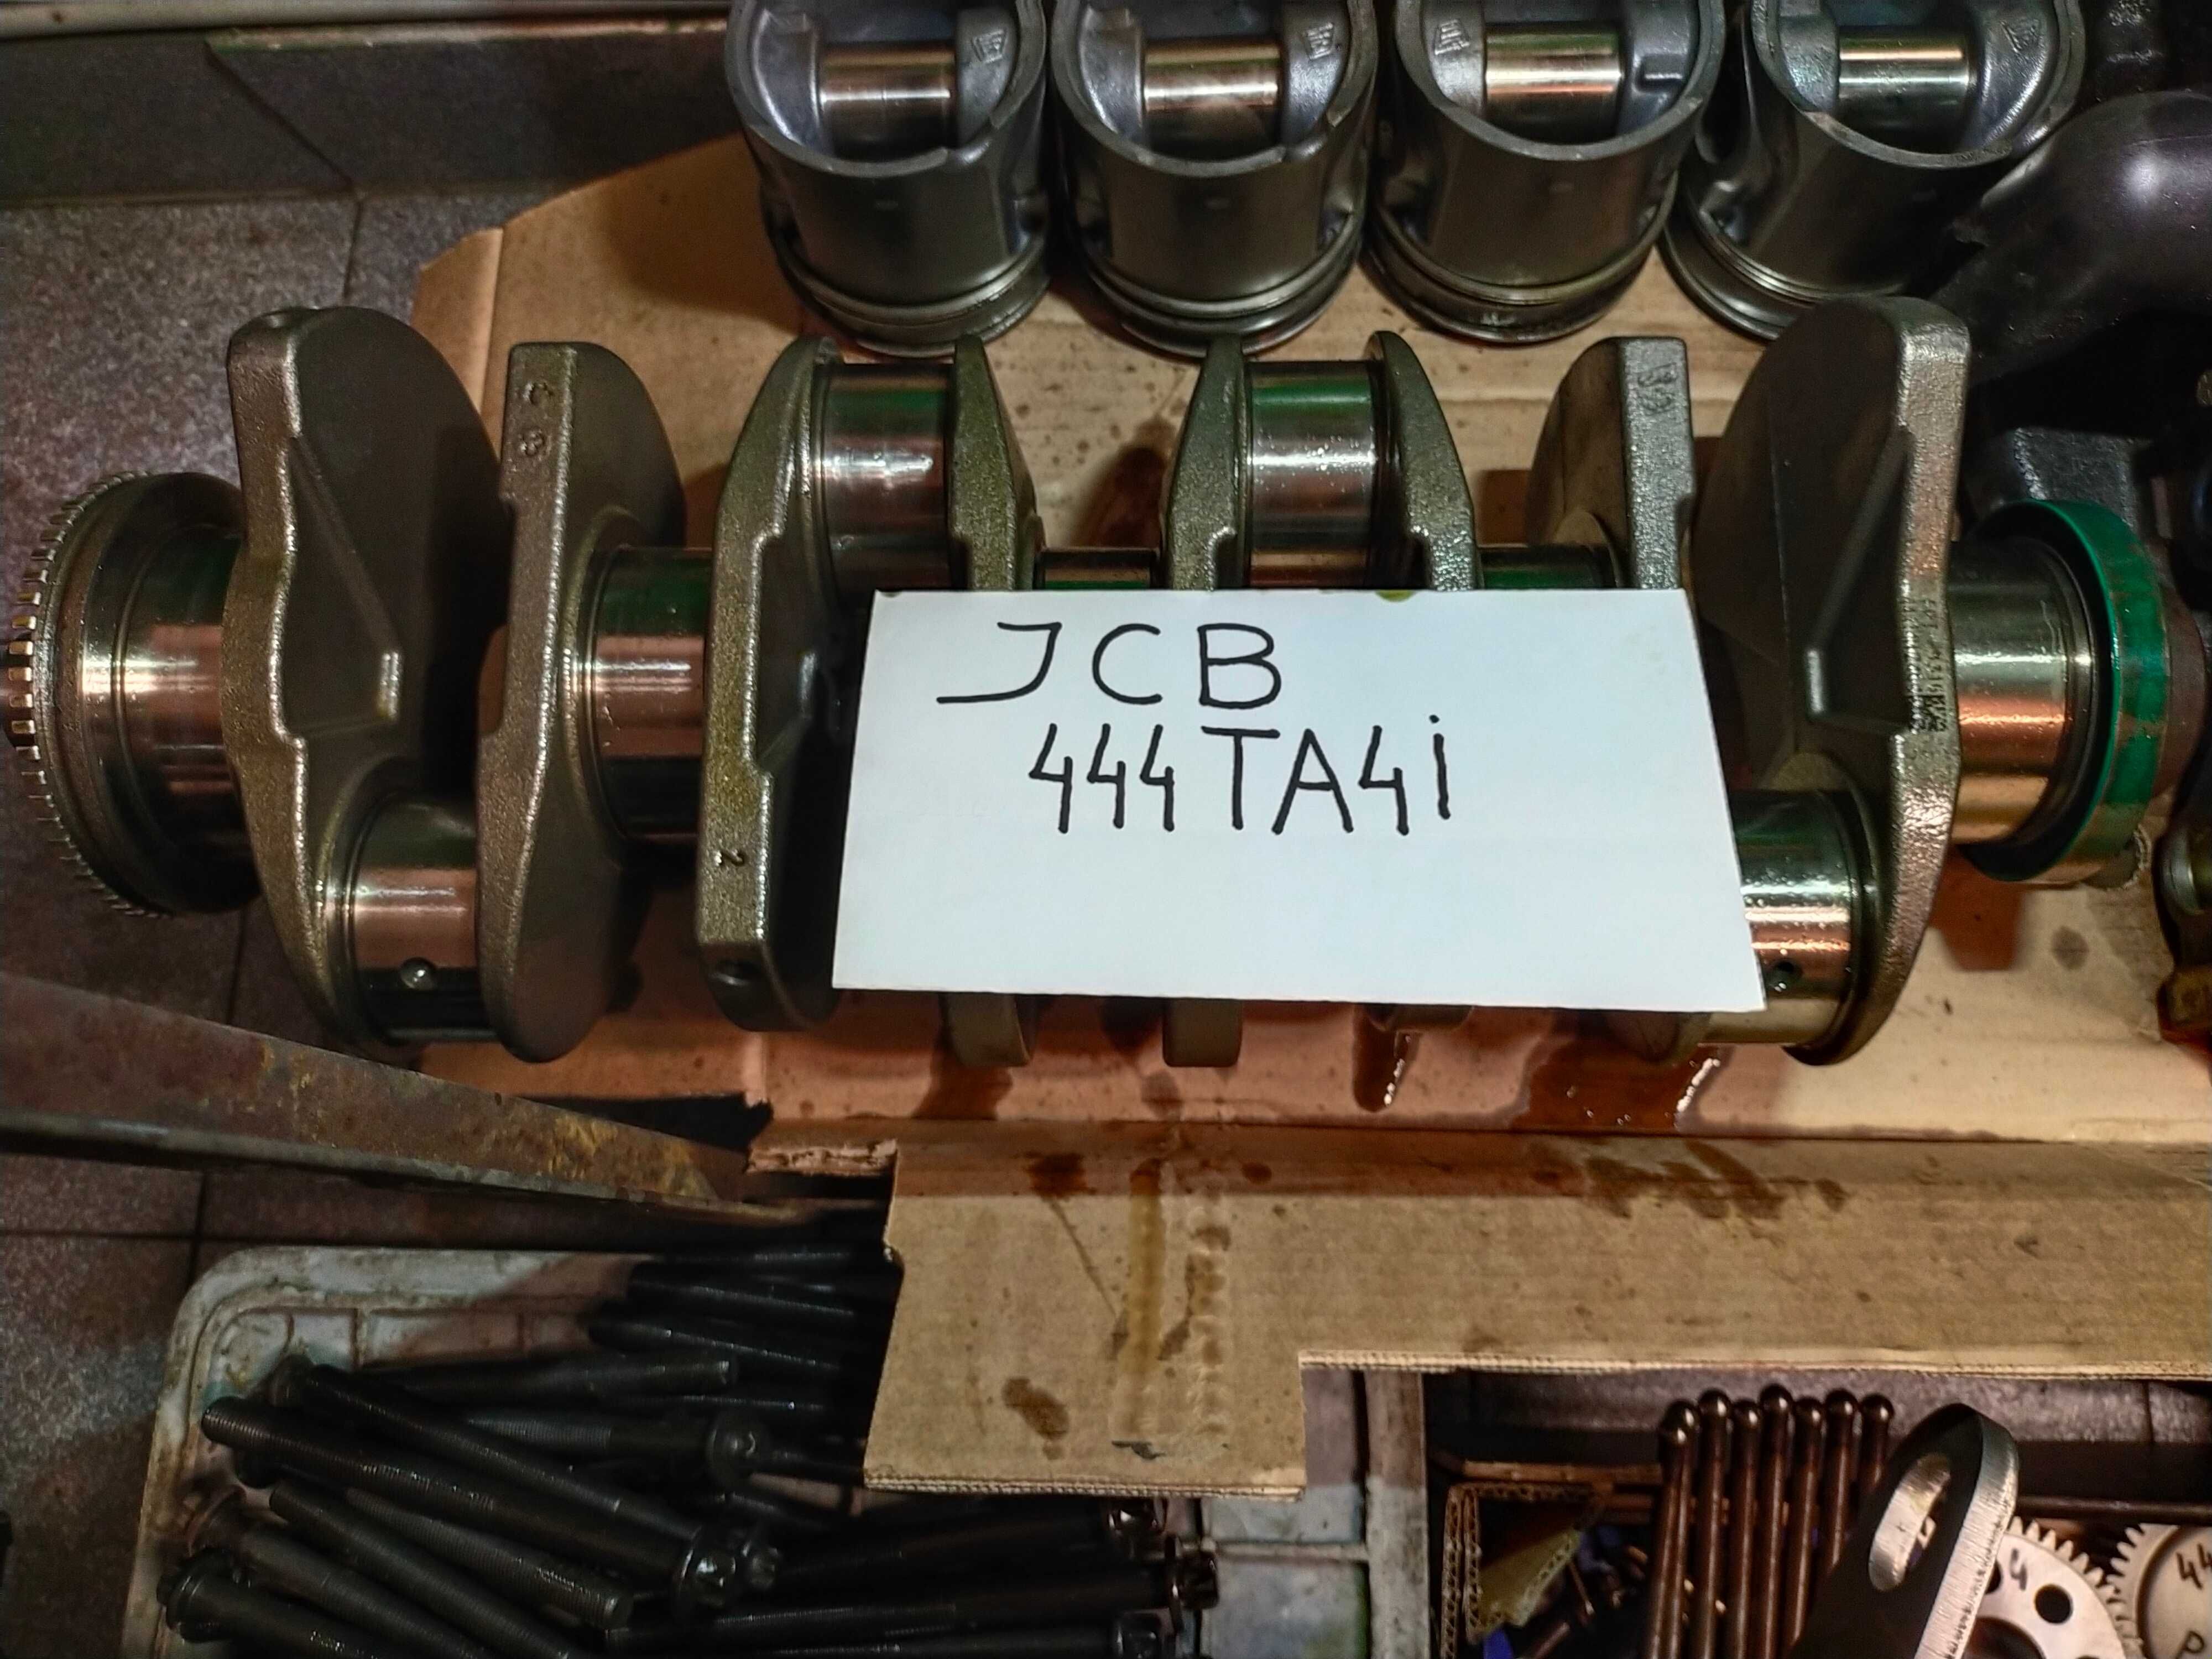 Silnik Perkins JCB typ 444 TA4I wszystkie czesci